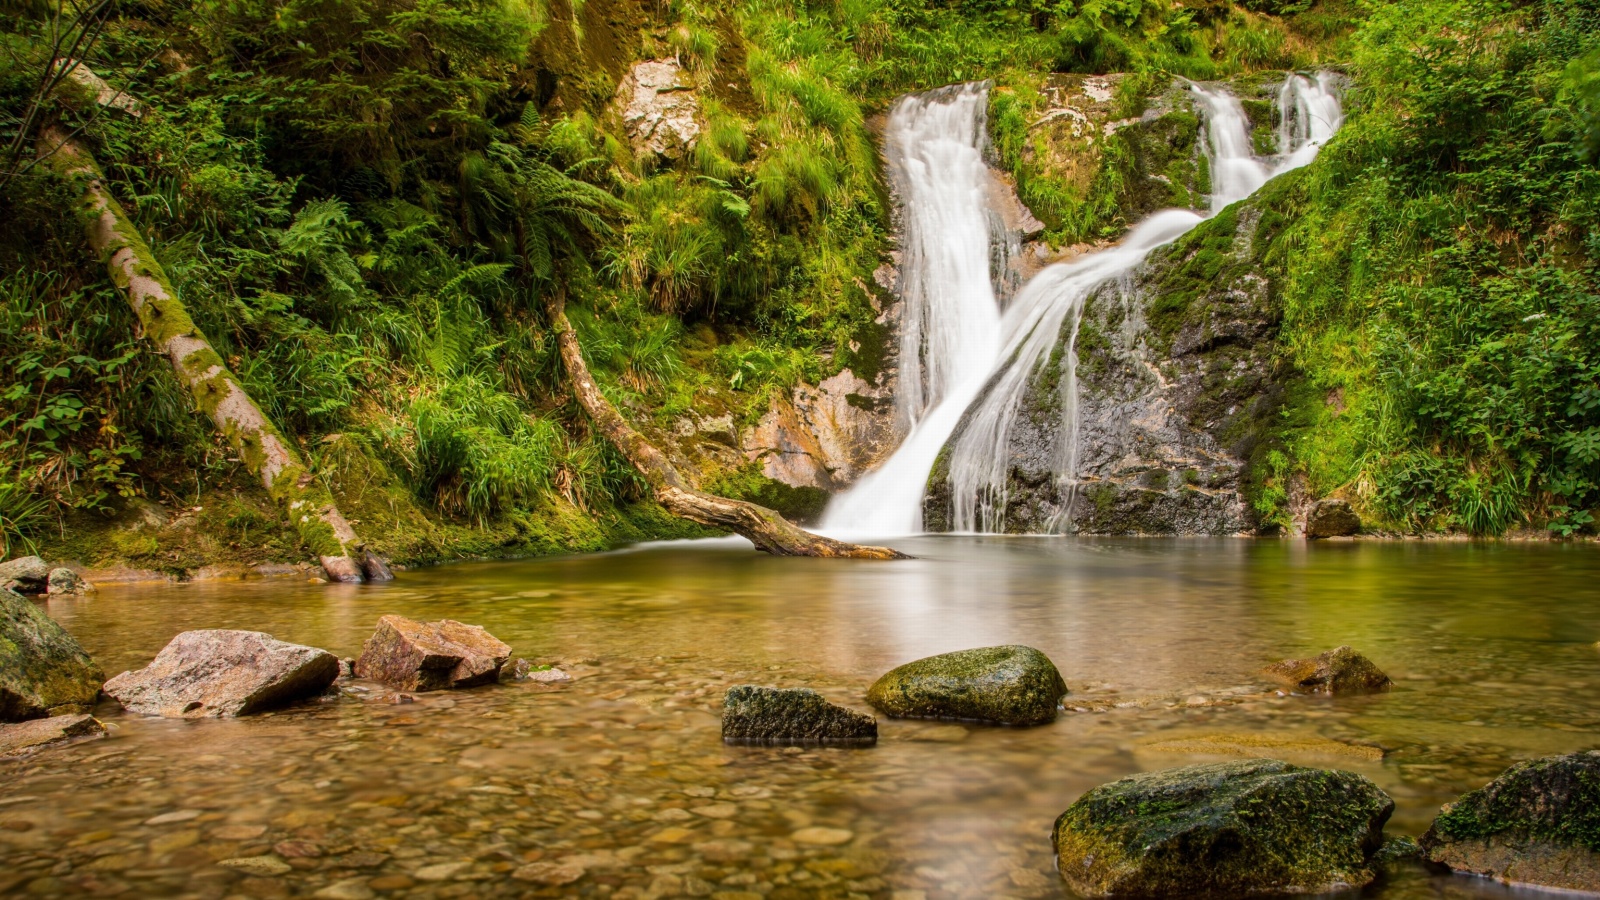 Обои Waterfall in Spain 1600x900